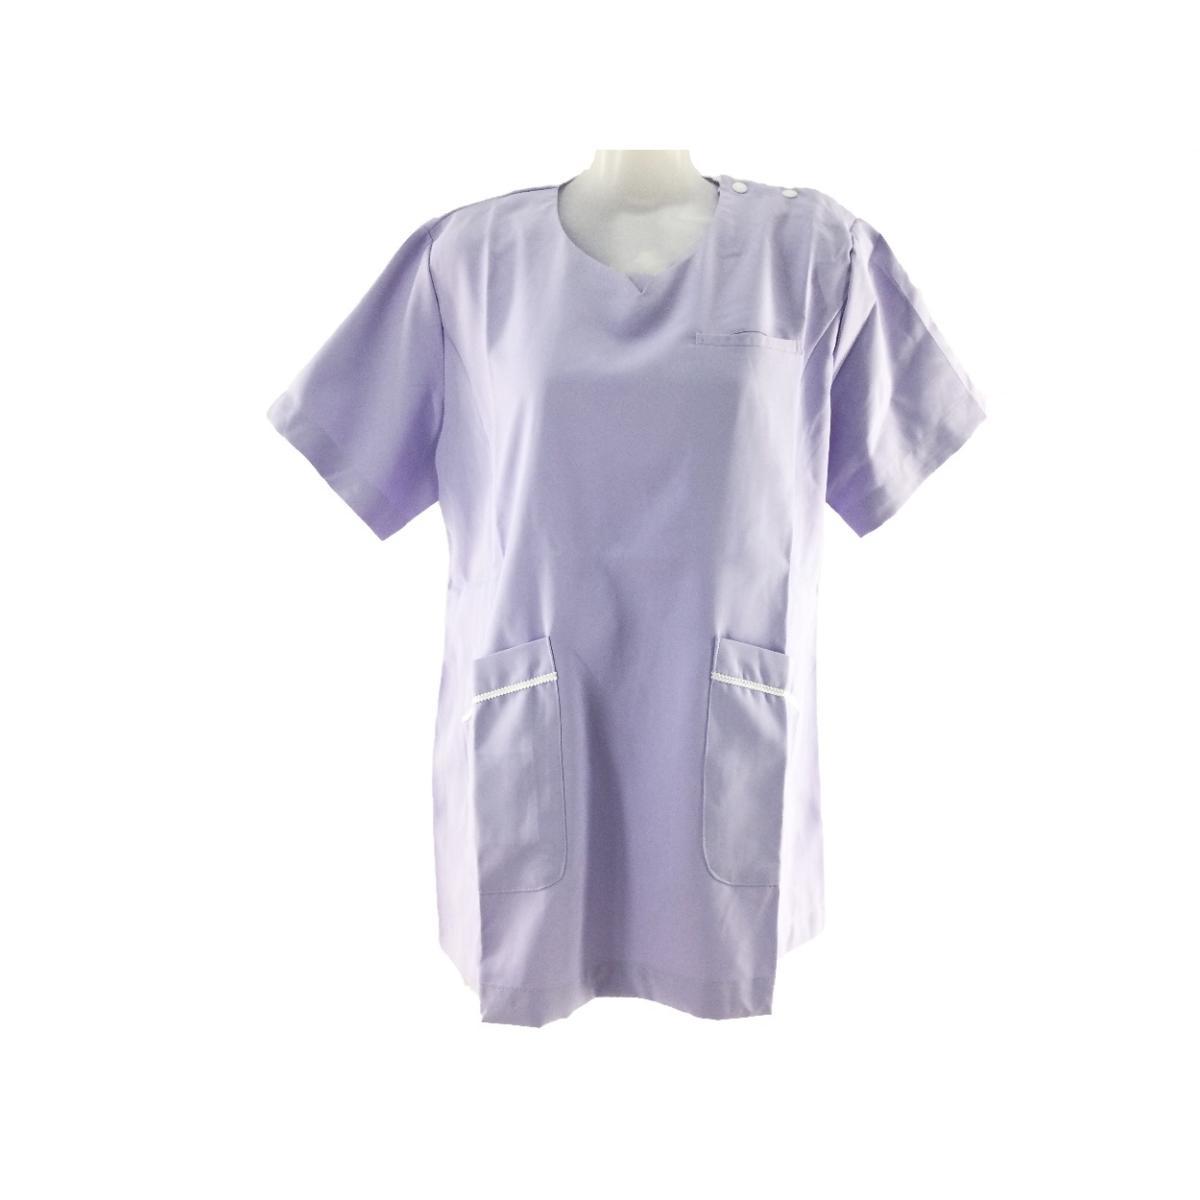  jacket no color shoulder snap nursing . nursing .M lavender x white postage 250 jpy 